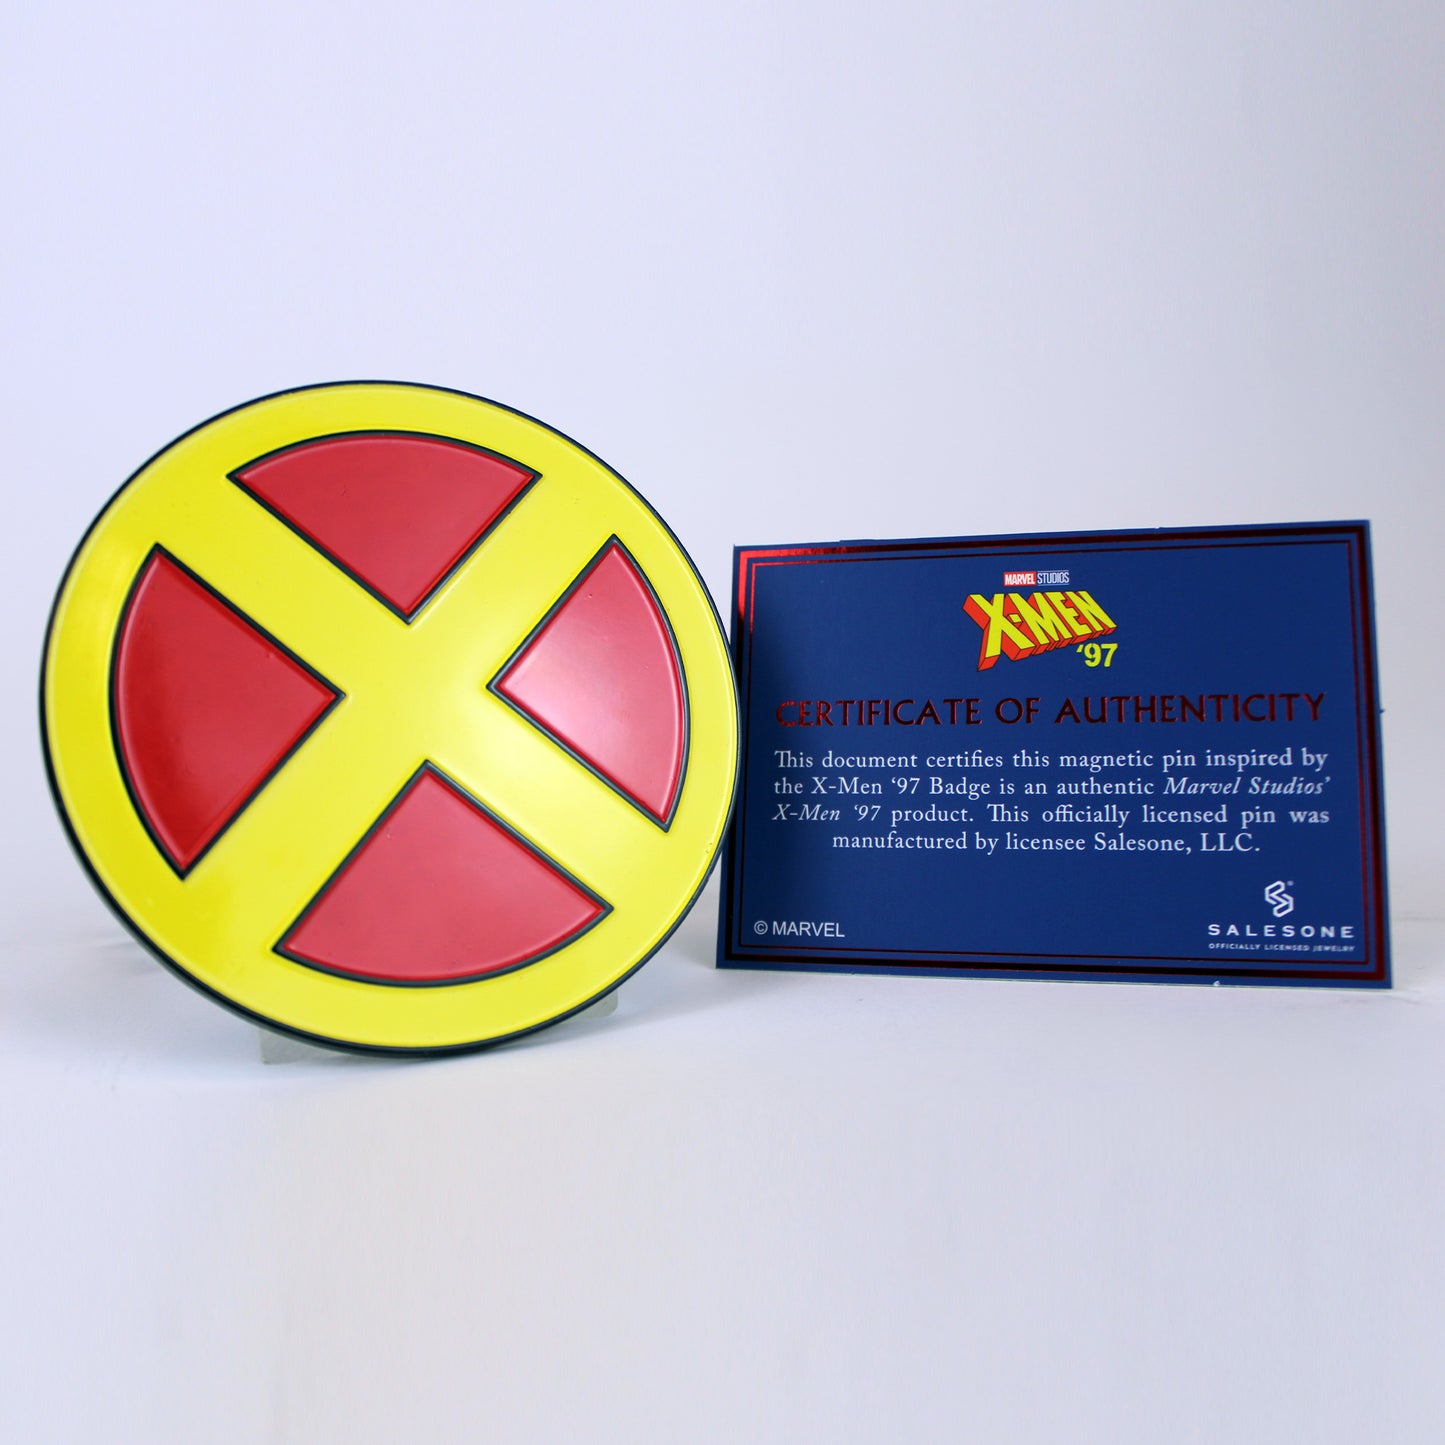 X-Men, Team Member Names Badge T-Shirt